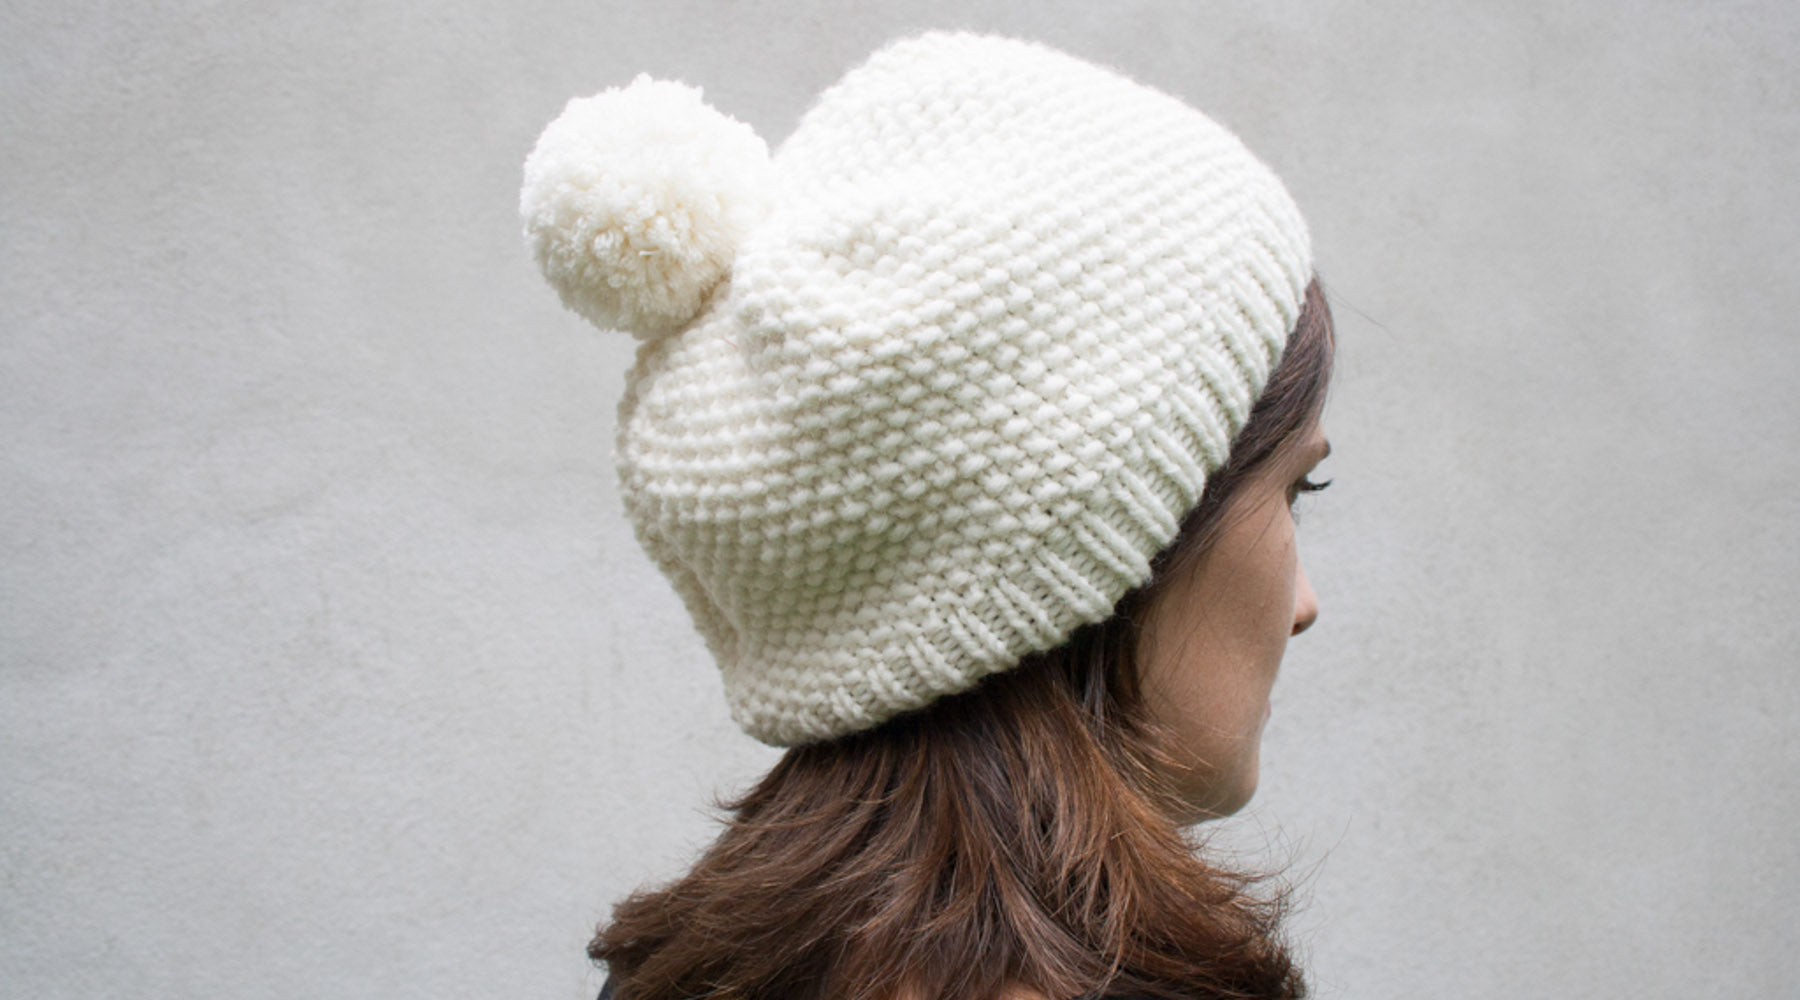 14 modèles pour tricoter un bonnet pour enfant - Marie Claire